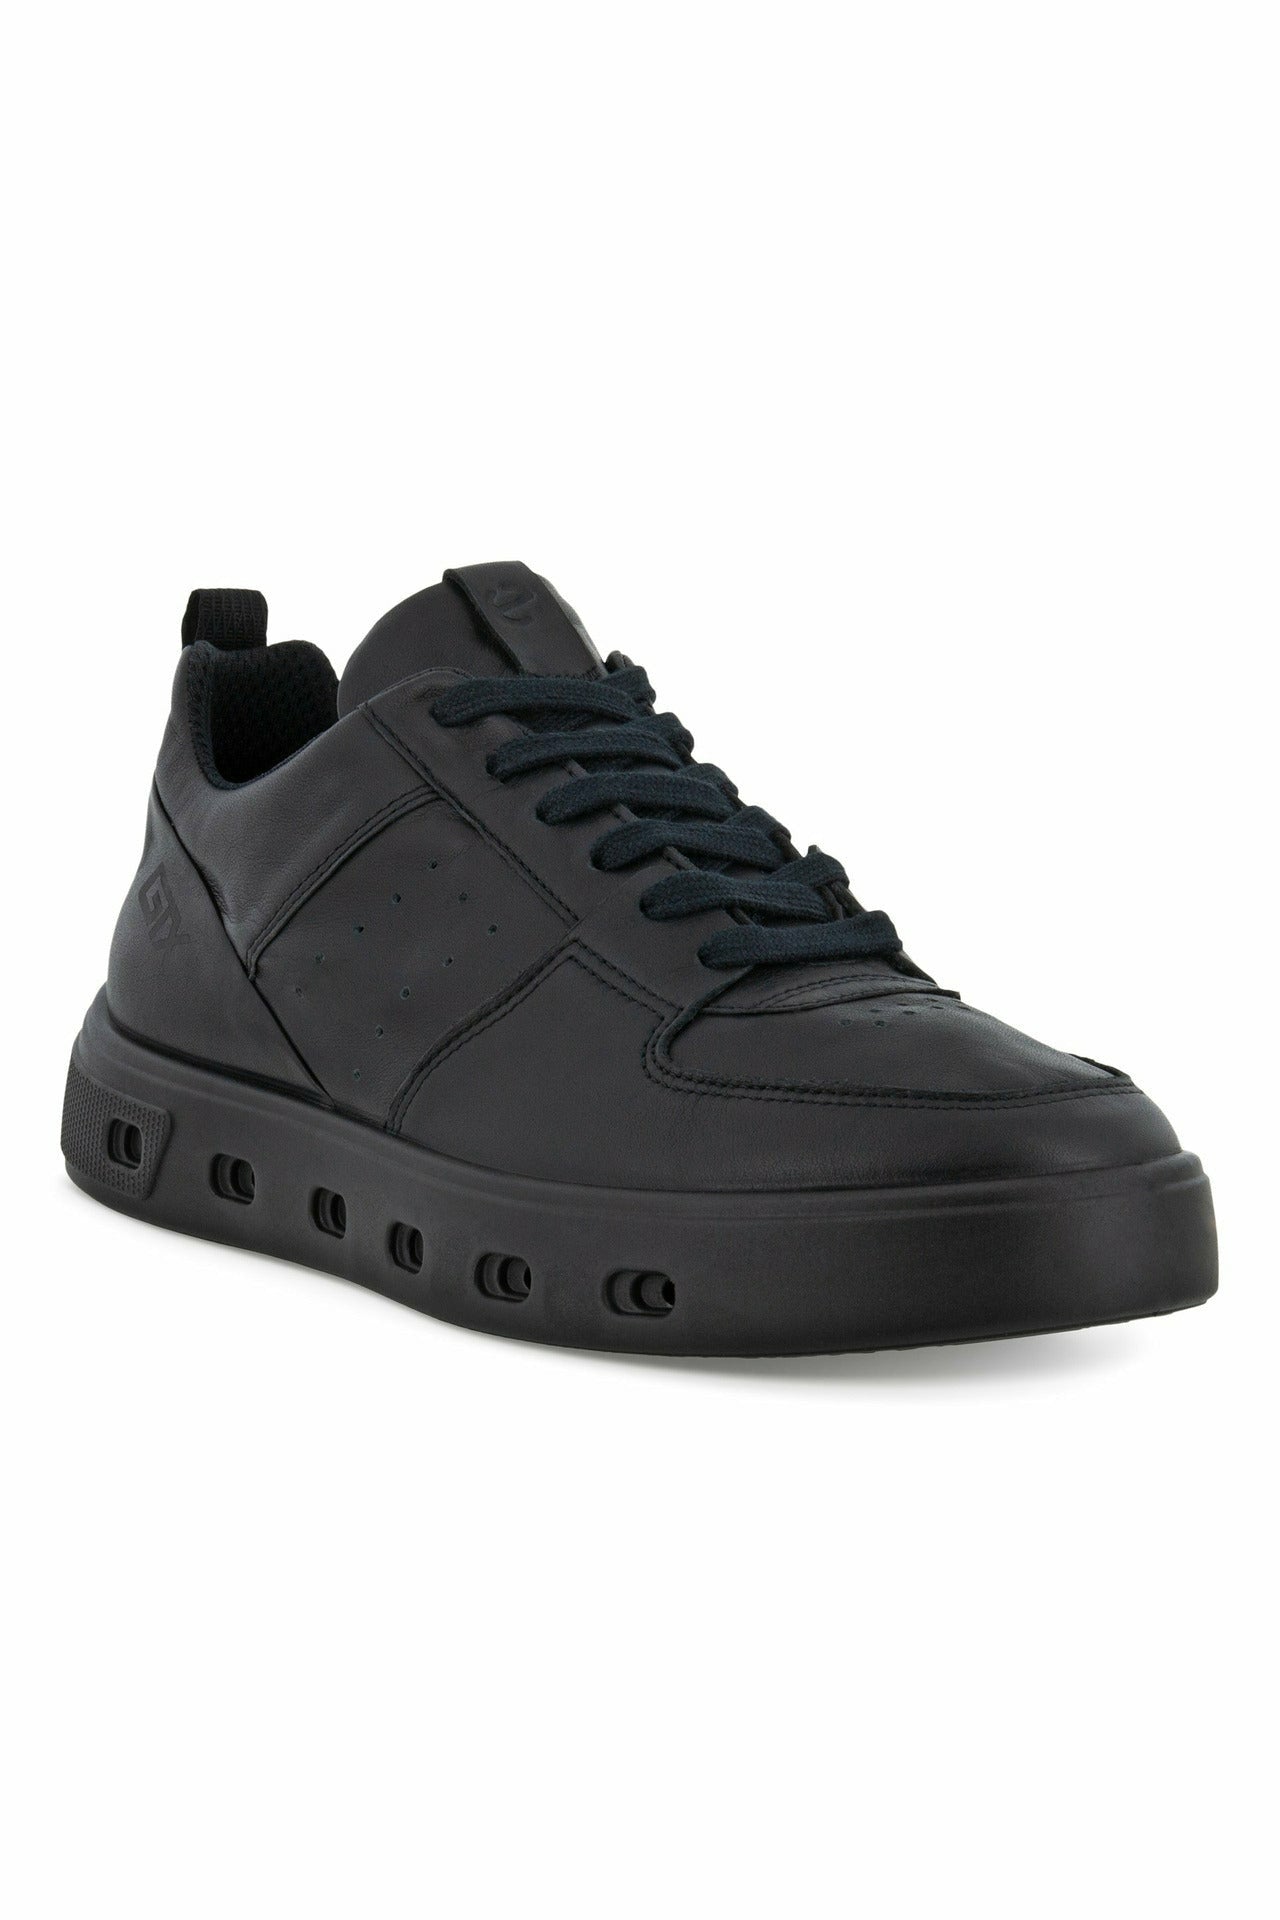 ECCO Street 720W sneaker 209713-01001 in Black leather